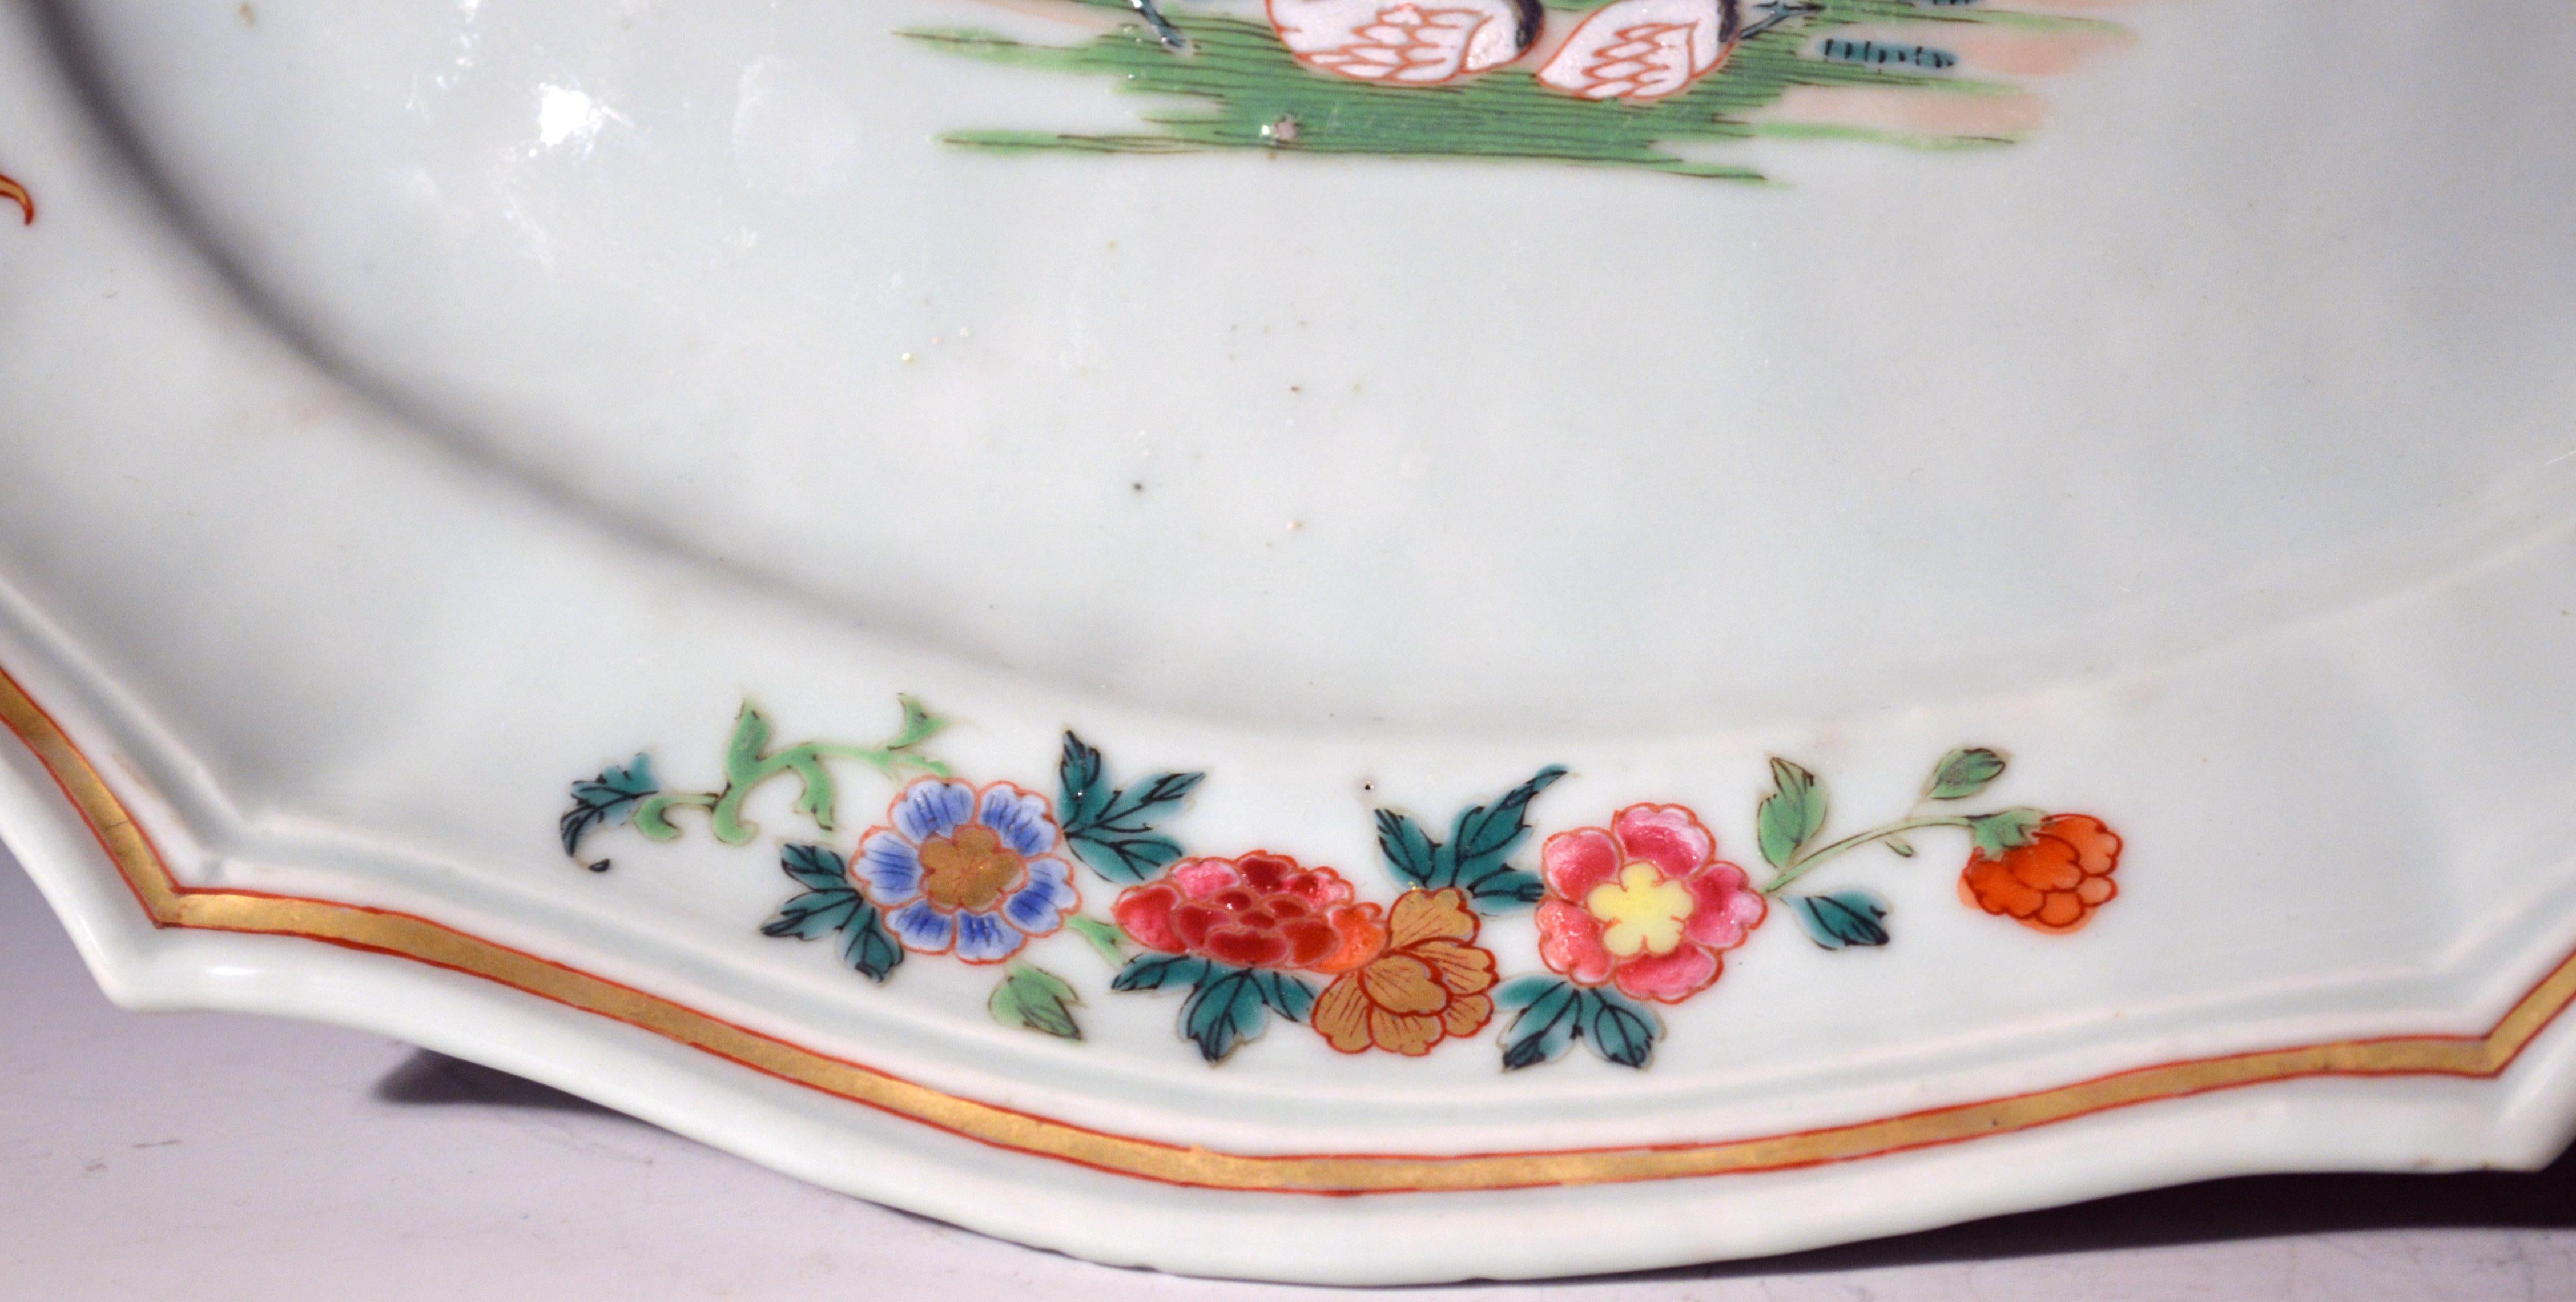 Plat en porcelaine d'exportation chinoise de forme argentée décoré d'oiseaux,
vers 1750-1760.

Le plat ovale avec un bord moulé est finement peint avec un groupe de différents oiseaux au centre, dont des oies, des faisans et un perroquet.